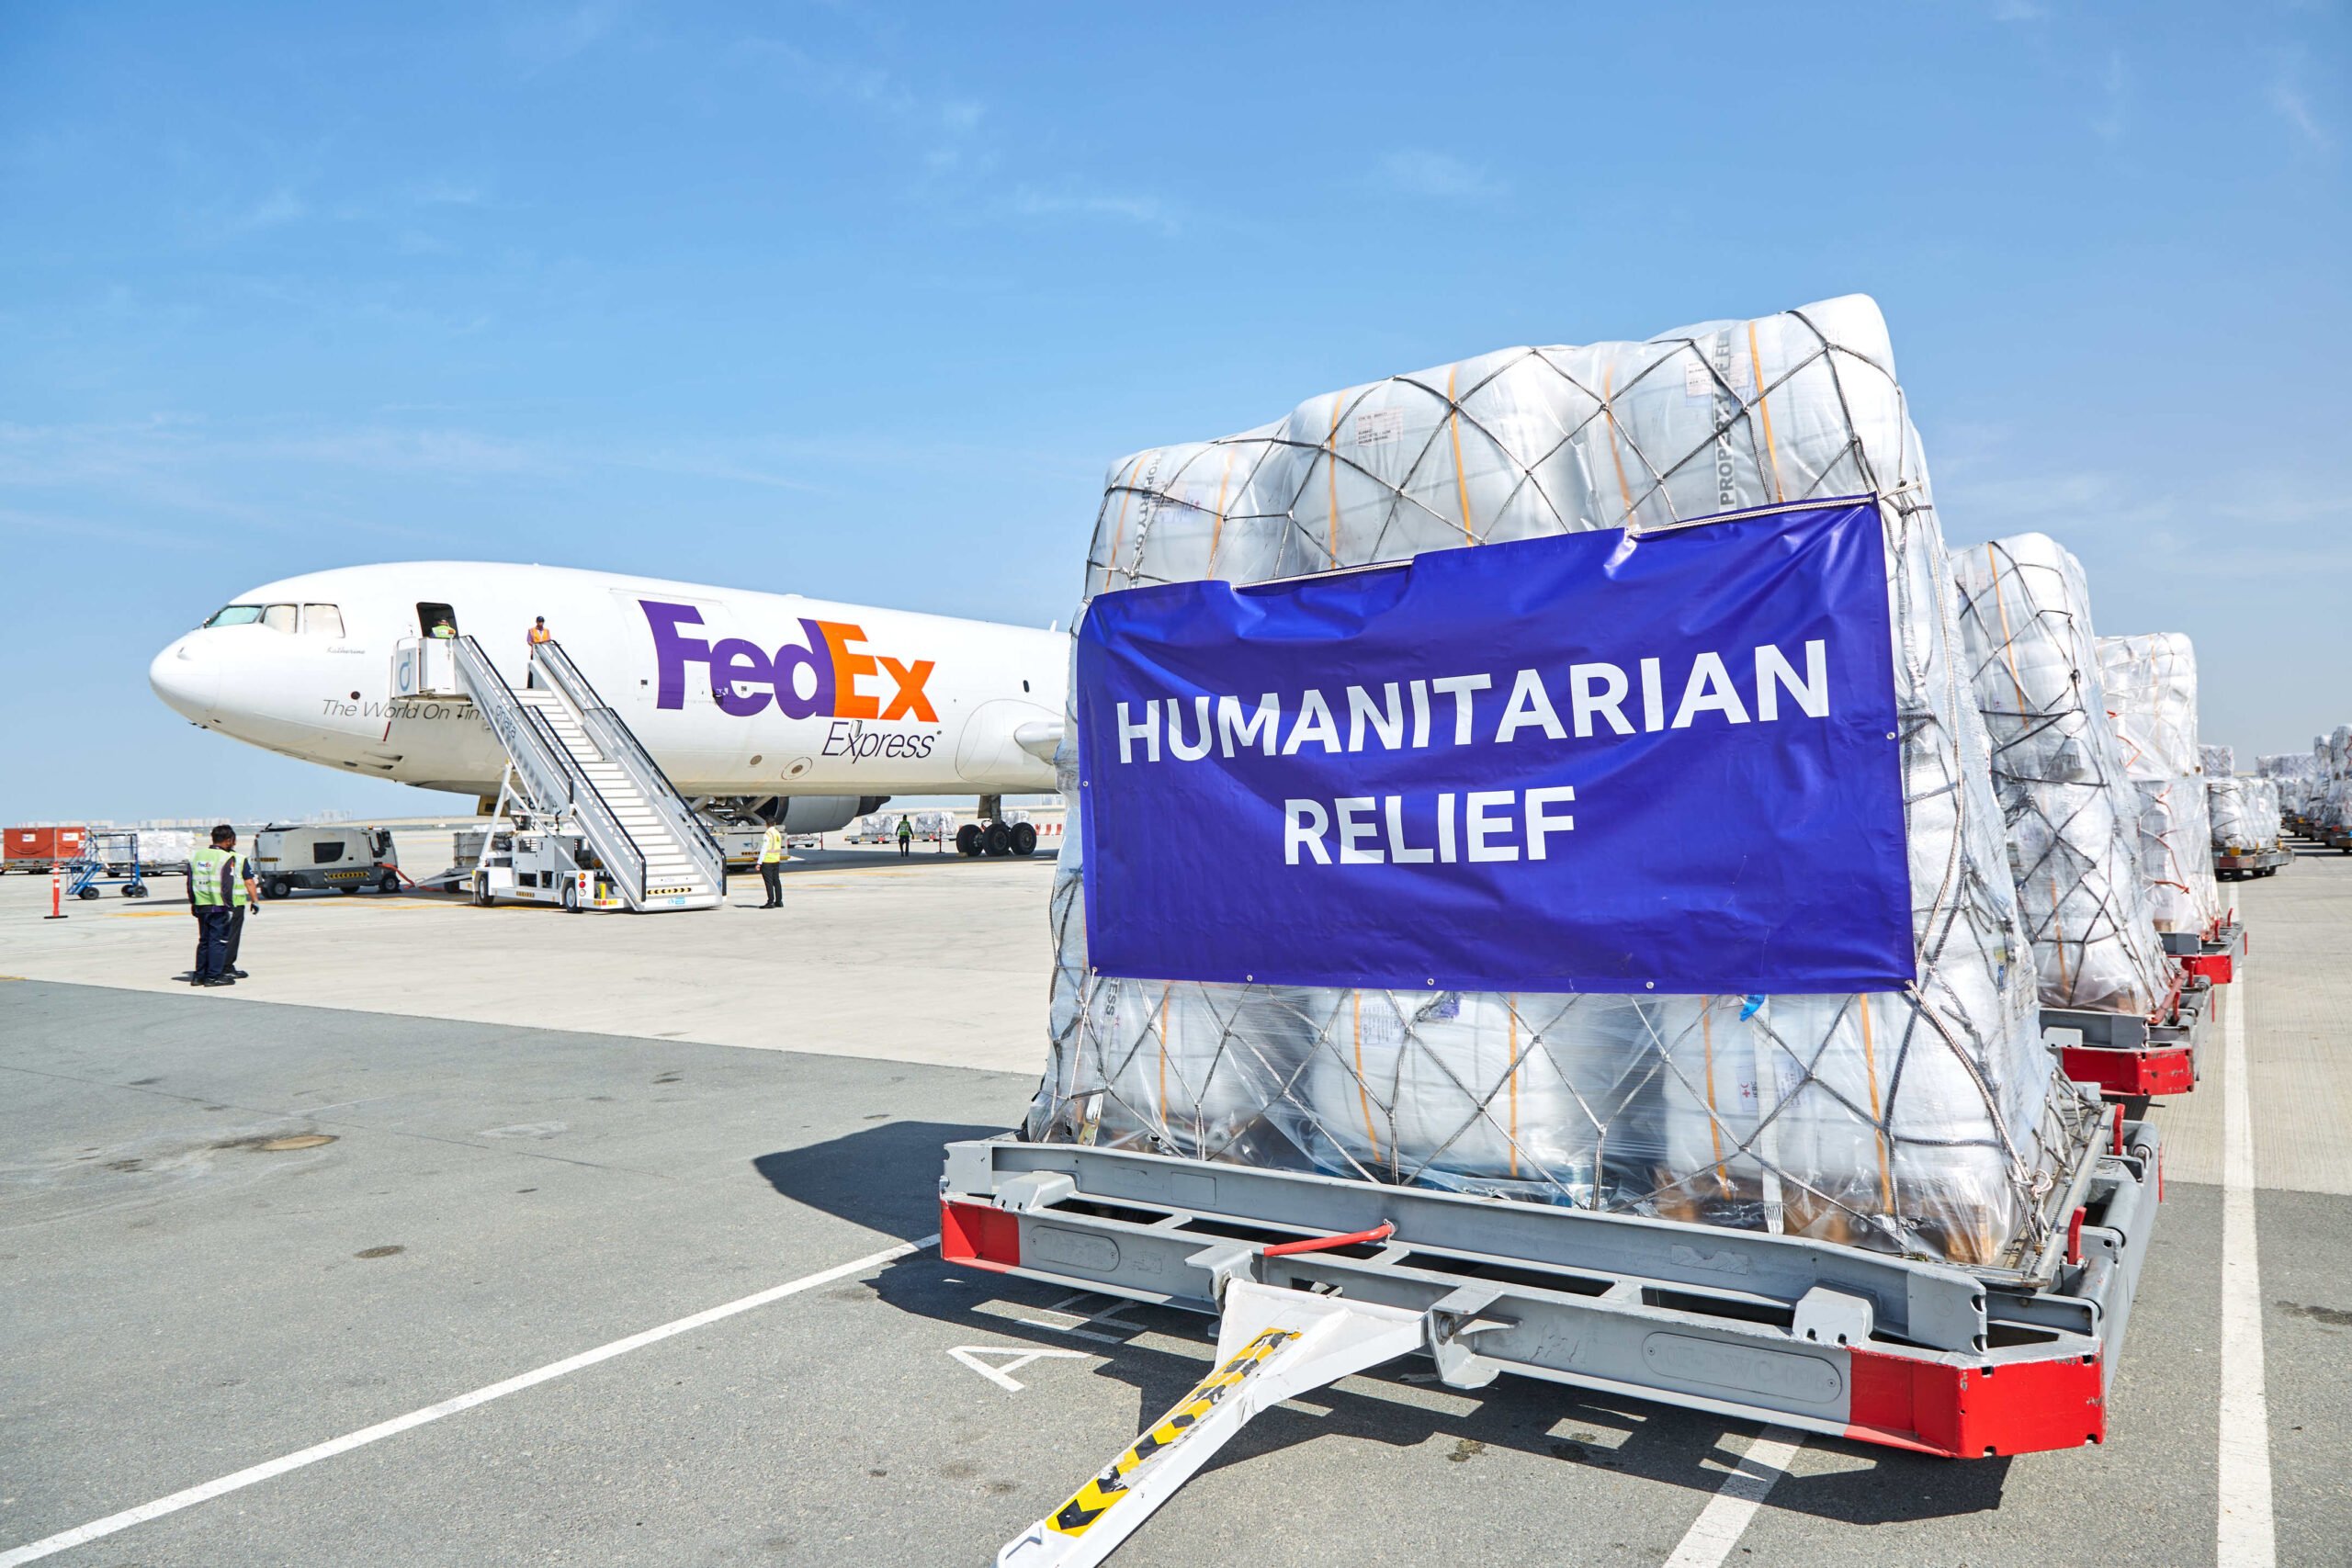 Türkiye_Turkey_FedEx_Relief Material